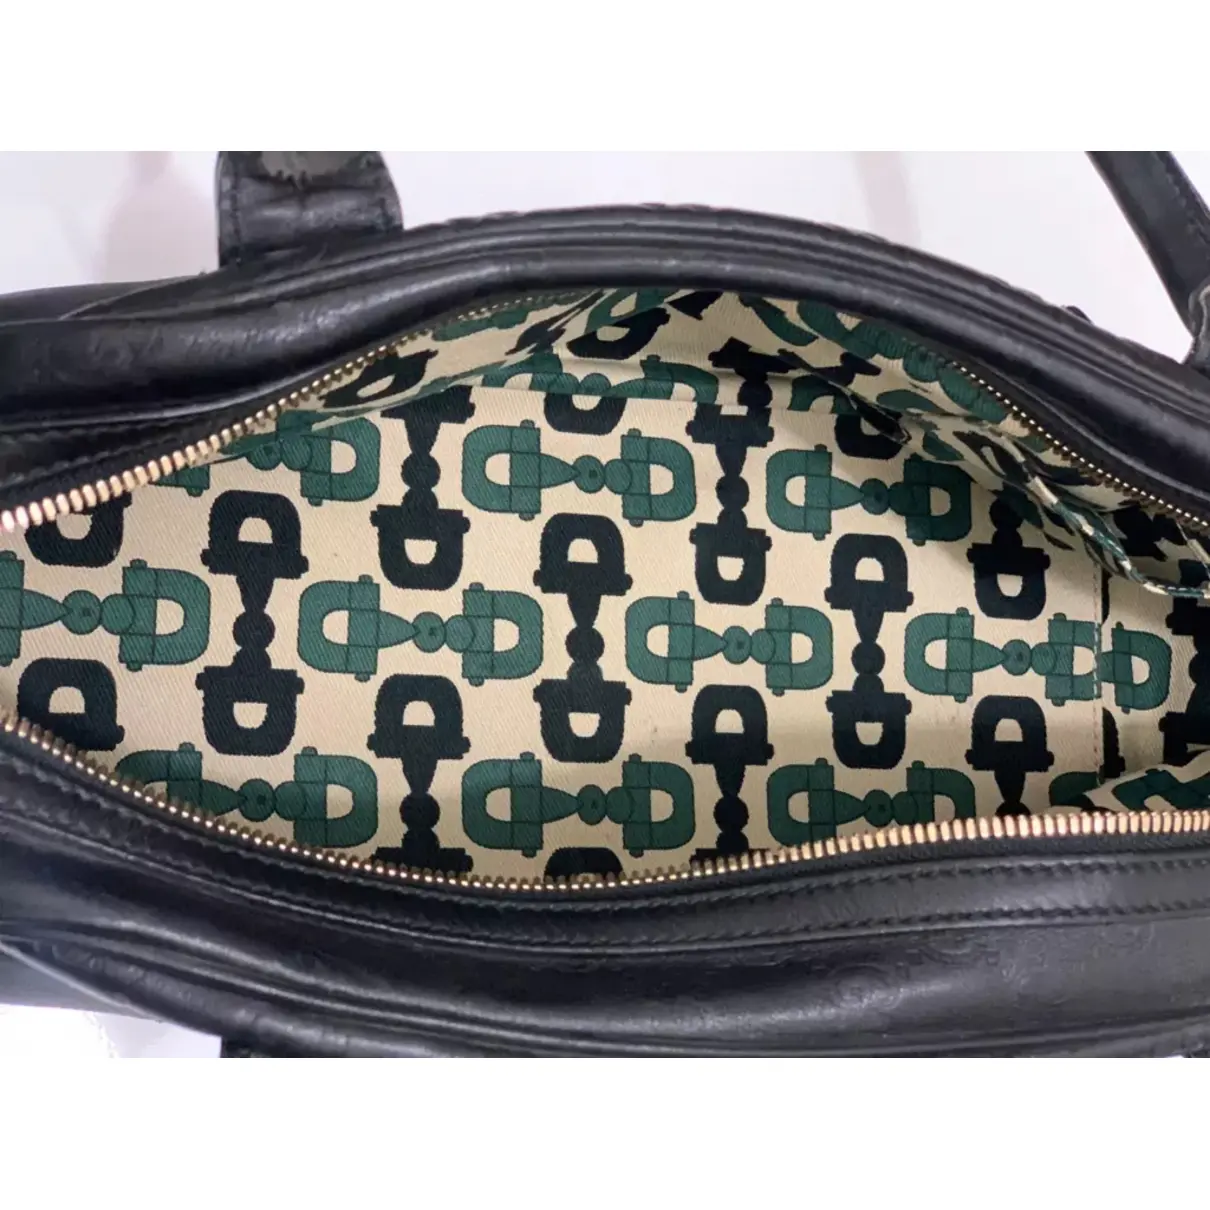 Princy leather handbag Gucci